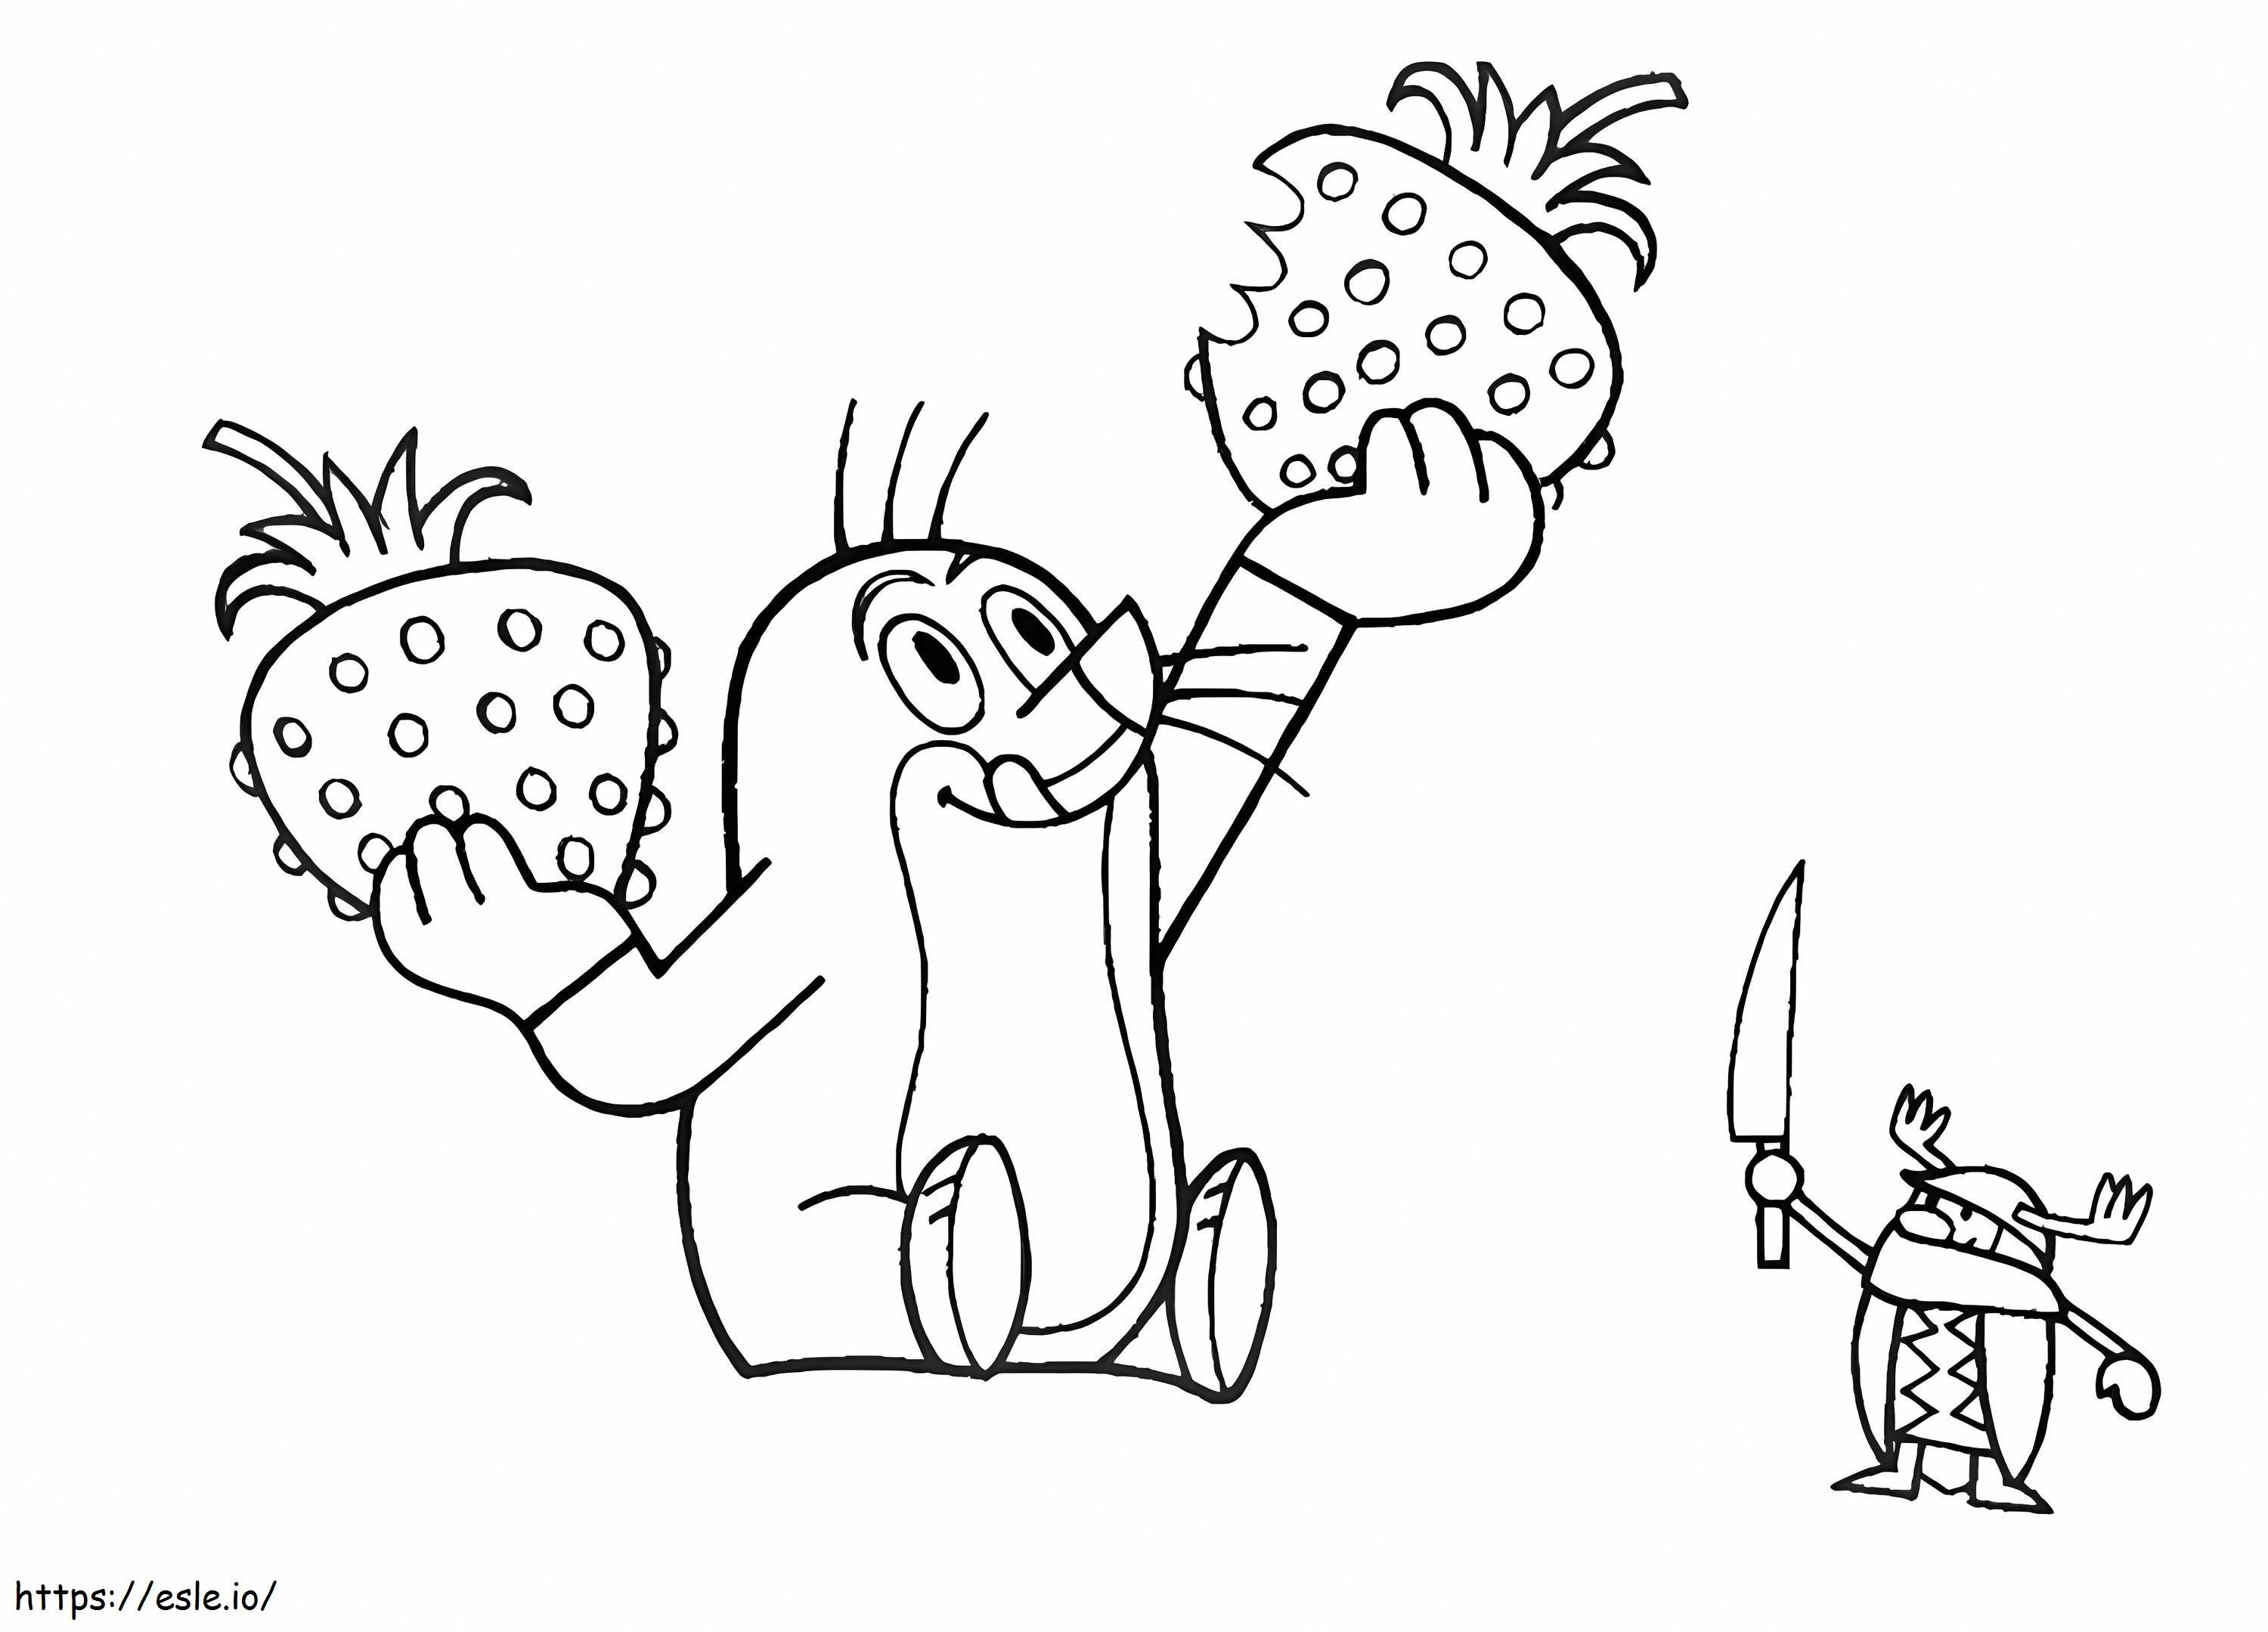 Krtek And Strawberries coloring page